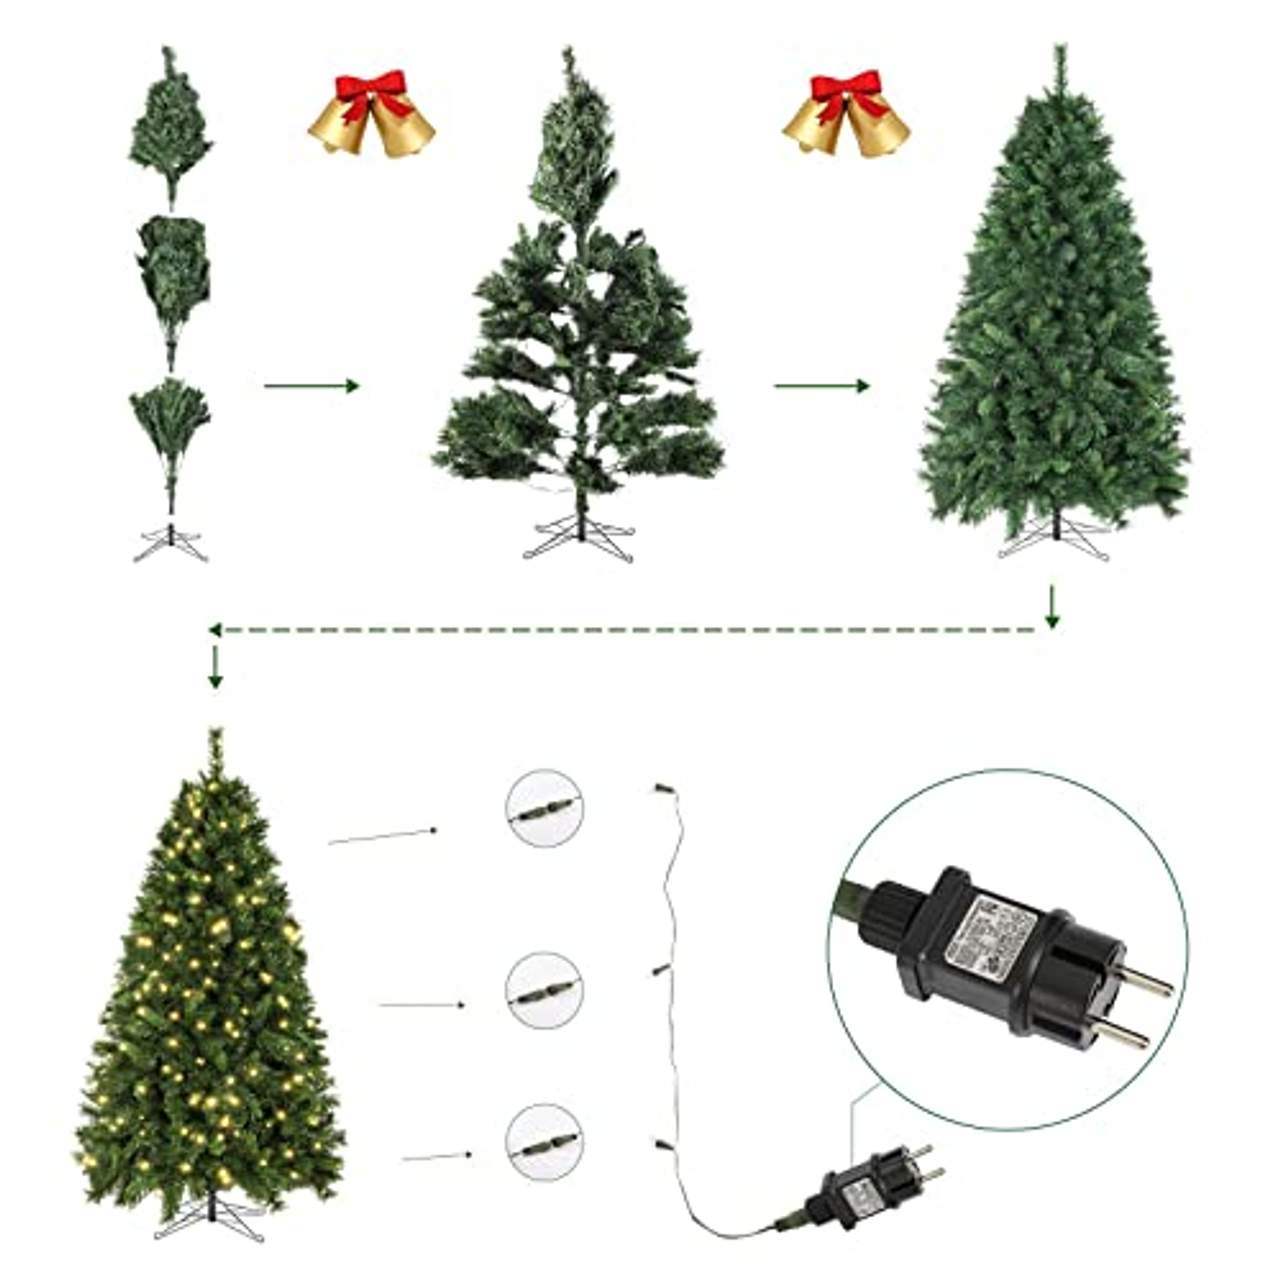 SALCAR Künstlicher Weihnachtsbaum mit Beleuchtung 180 cm